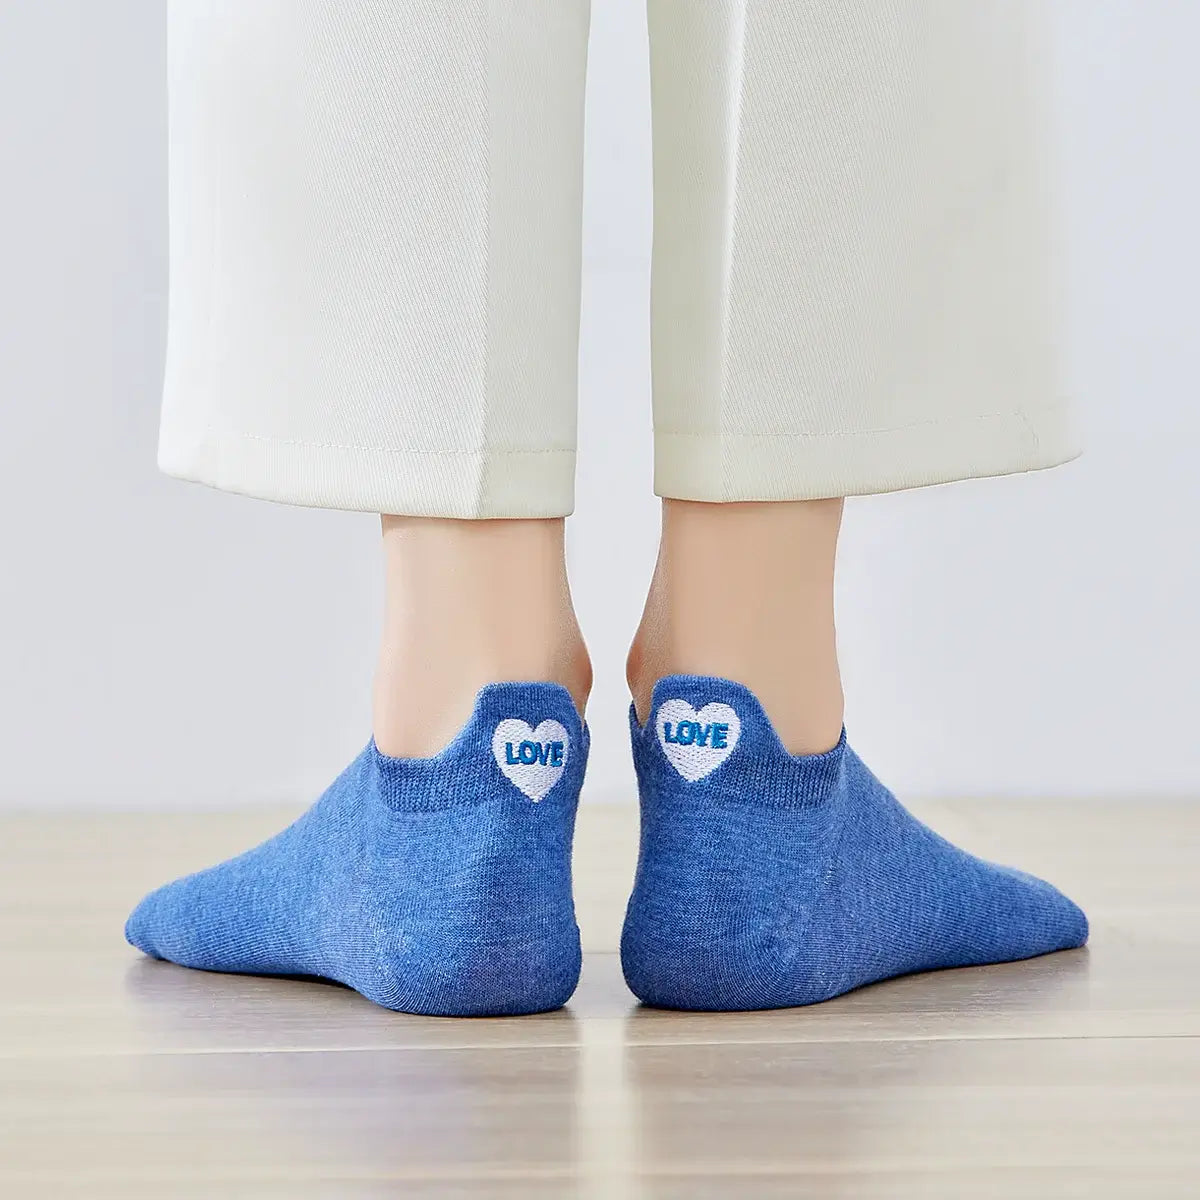 Chaussettes bleu en coton à languette cœur love pour femme | Chaussettes douces et respirantes | Un cadeau parfait pour les femmes de tous âges | Disponibles à un prix abordable.